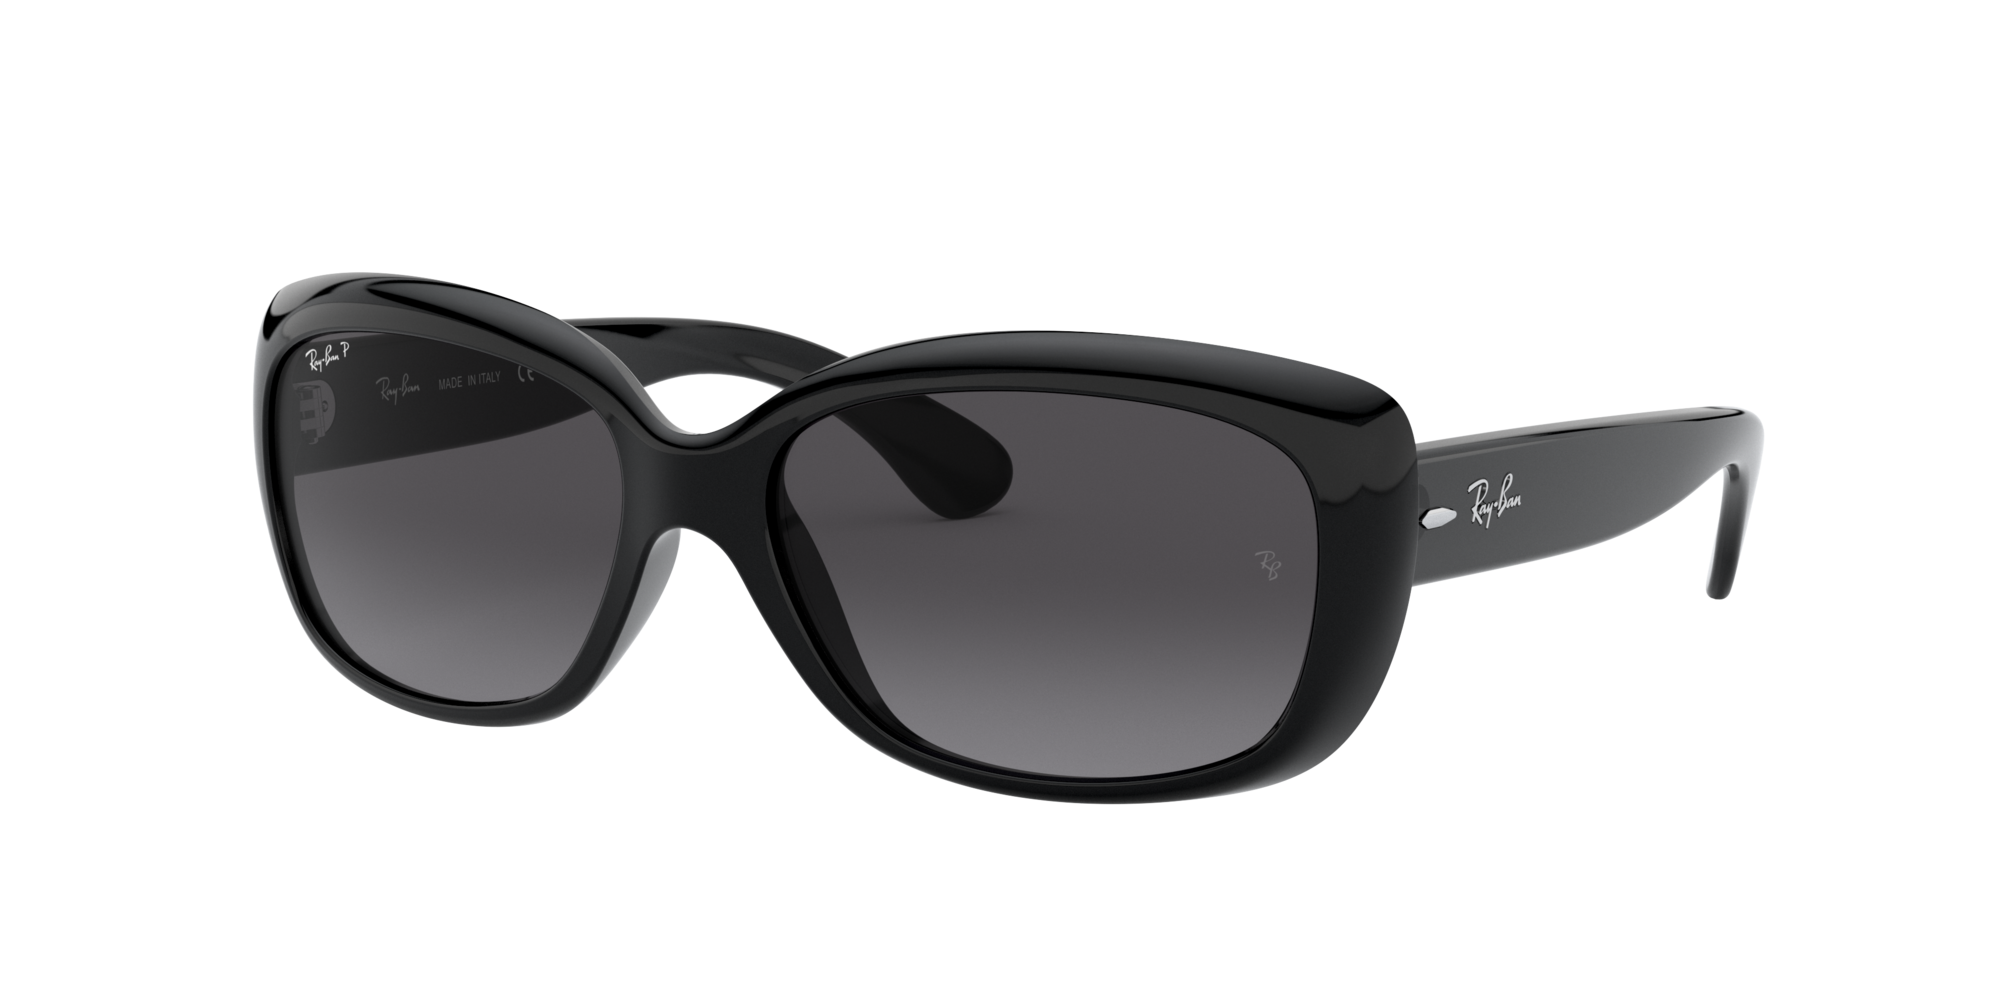 rb4101 sunglasses